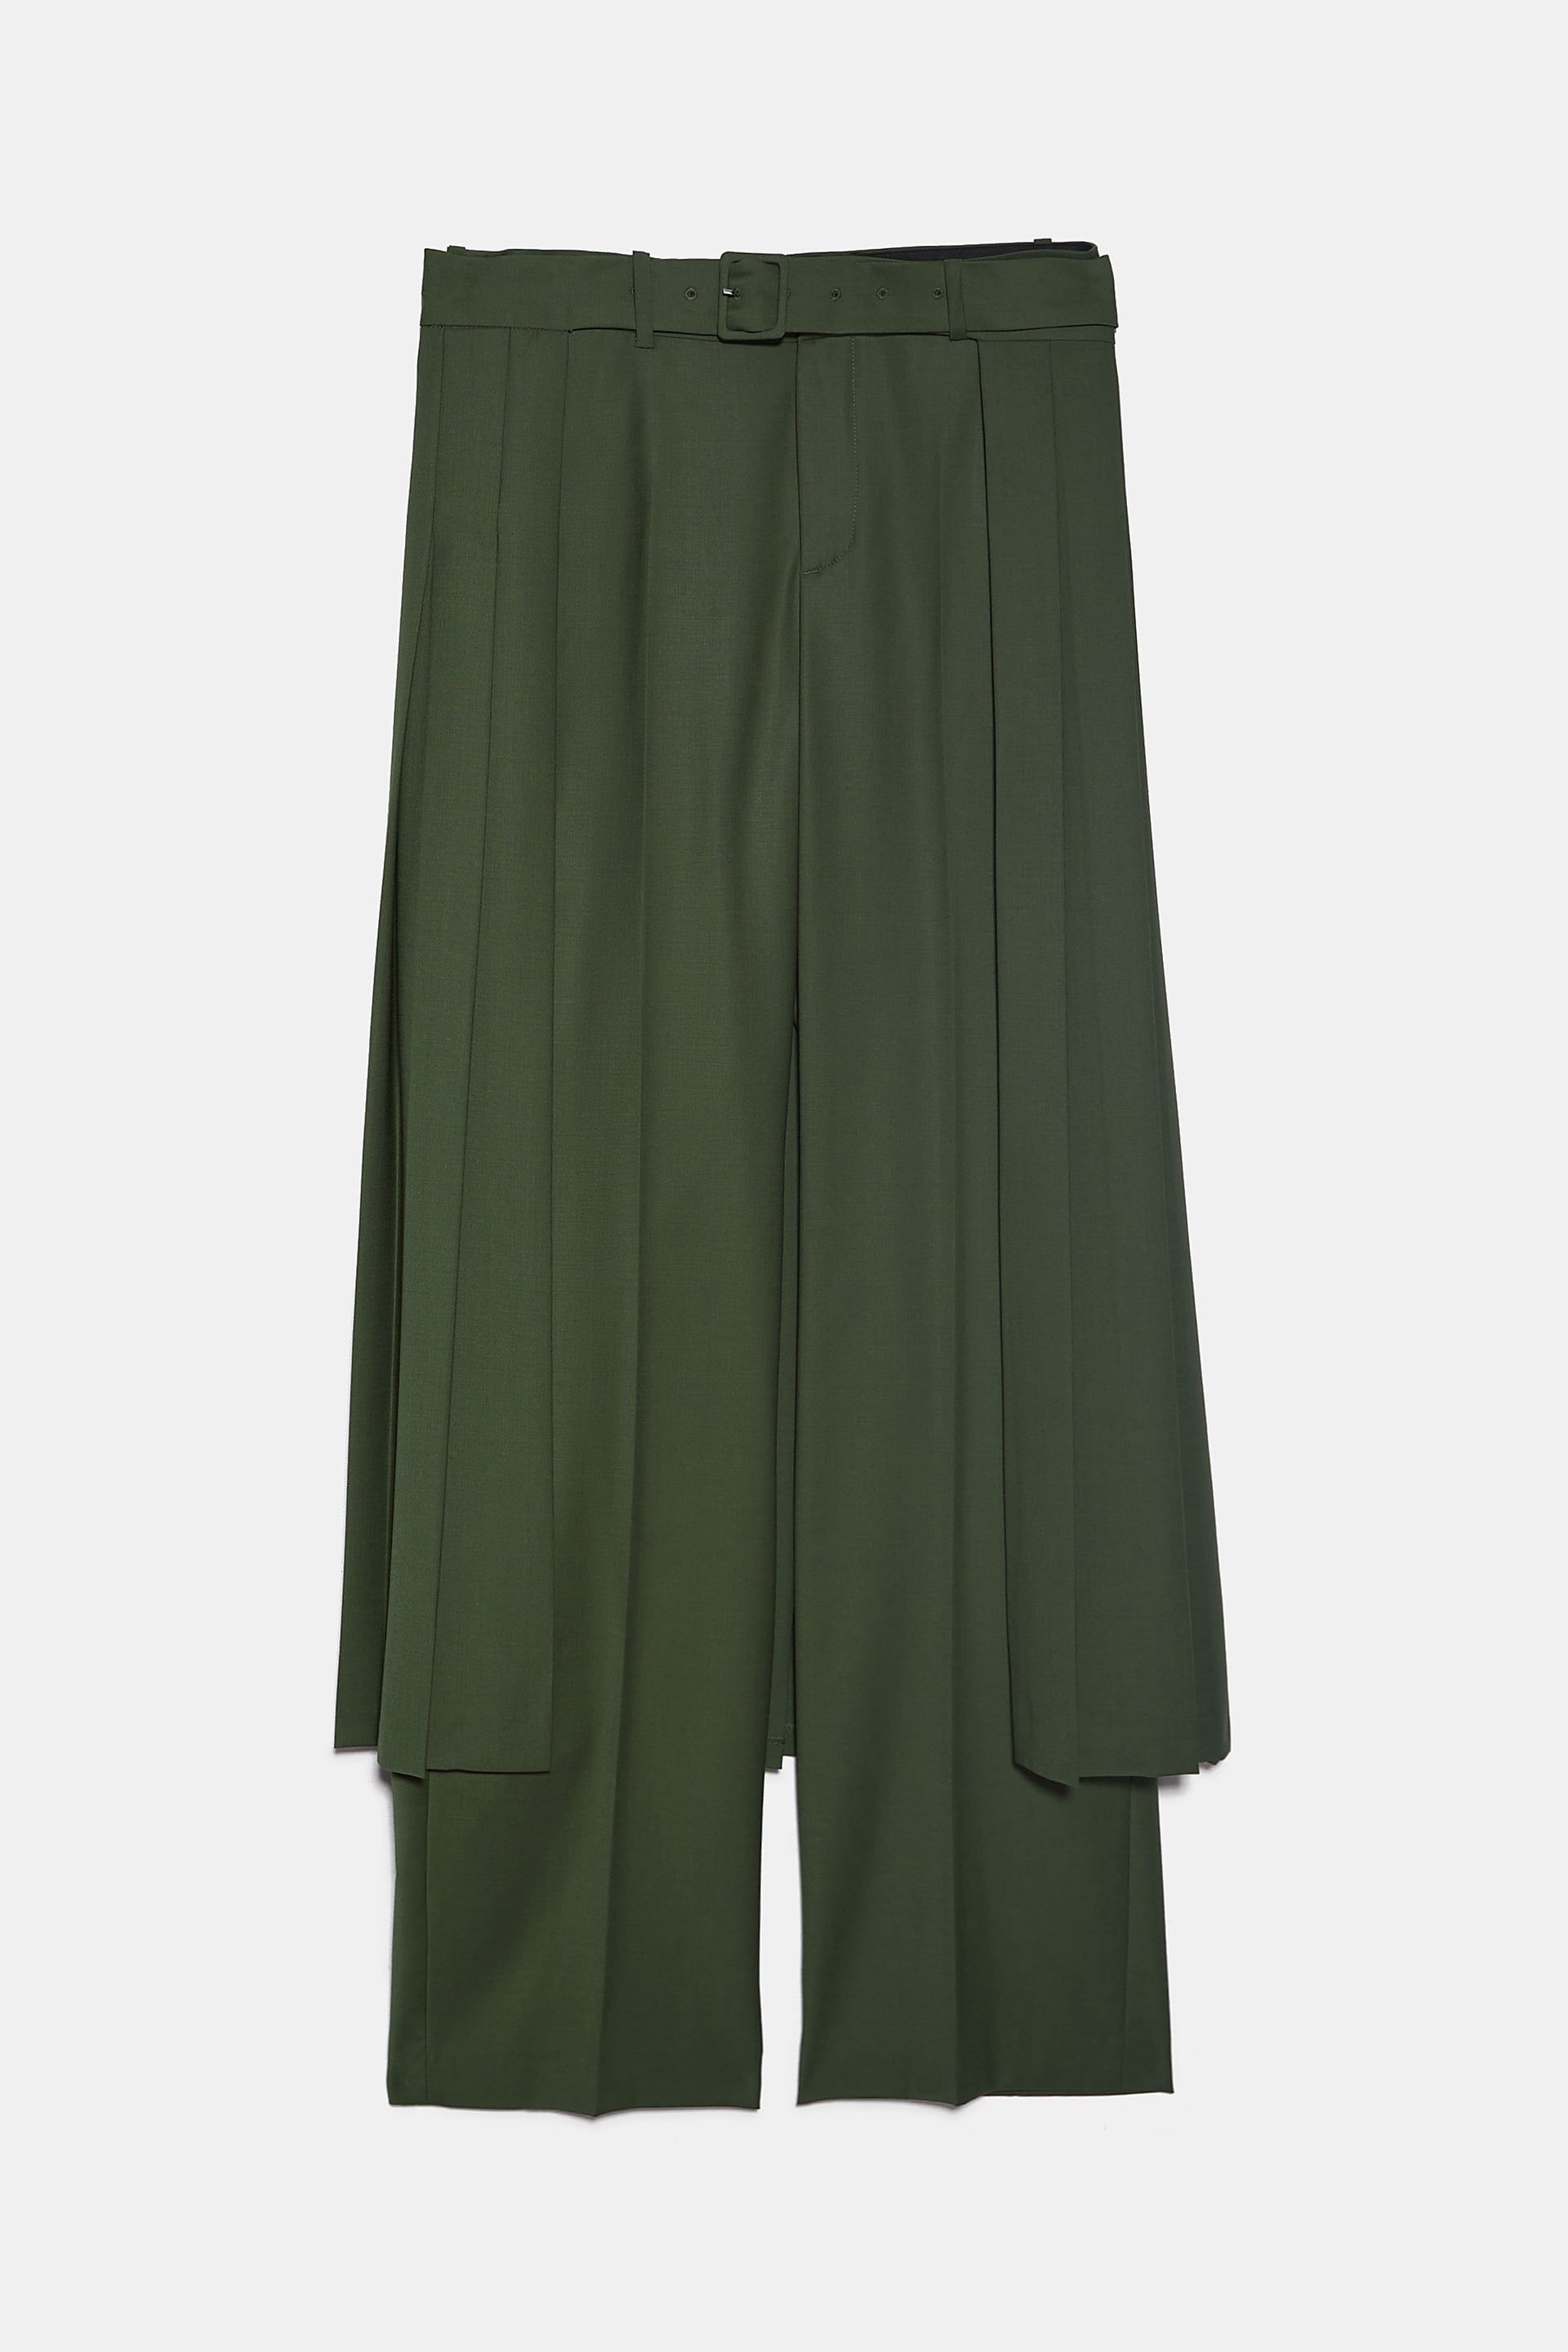 La falda pantalón de Zara plisada e ideal que será hoy noticia